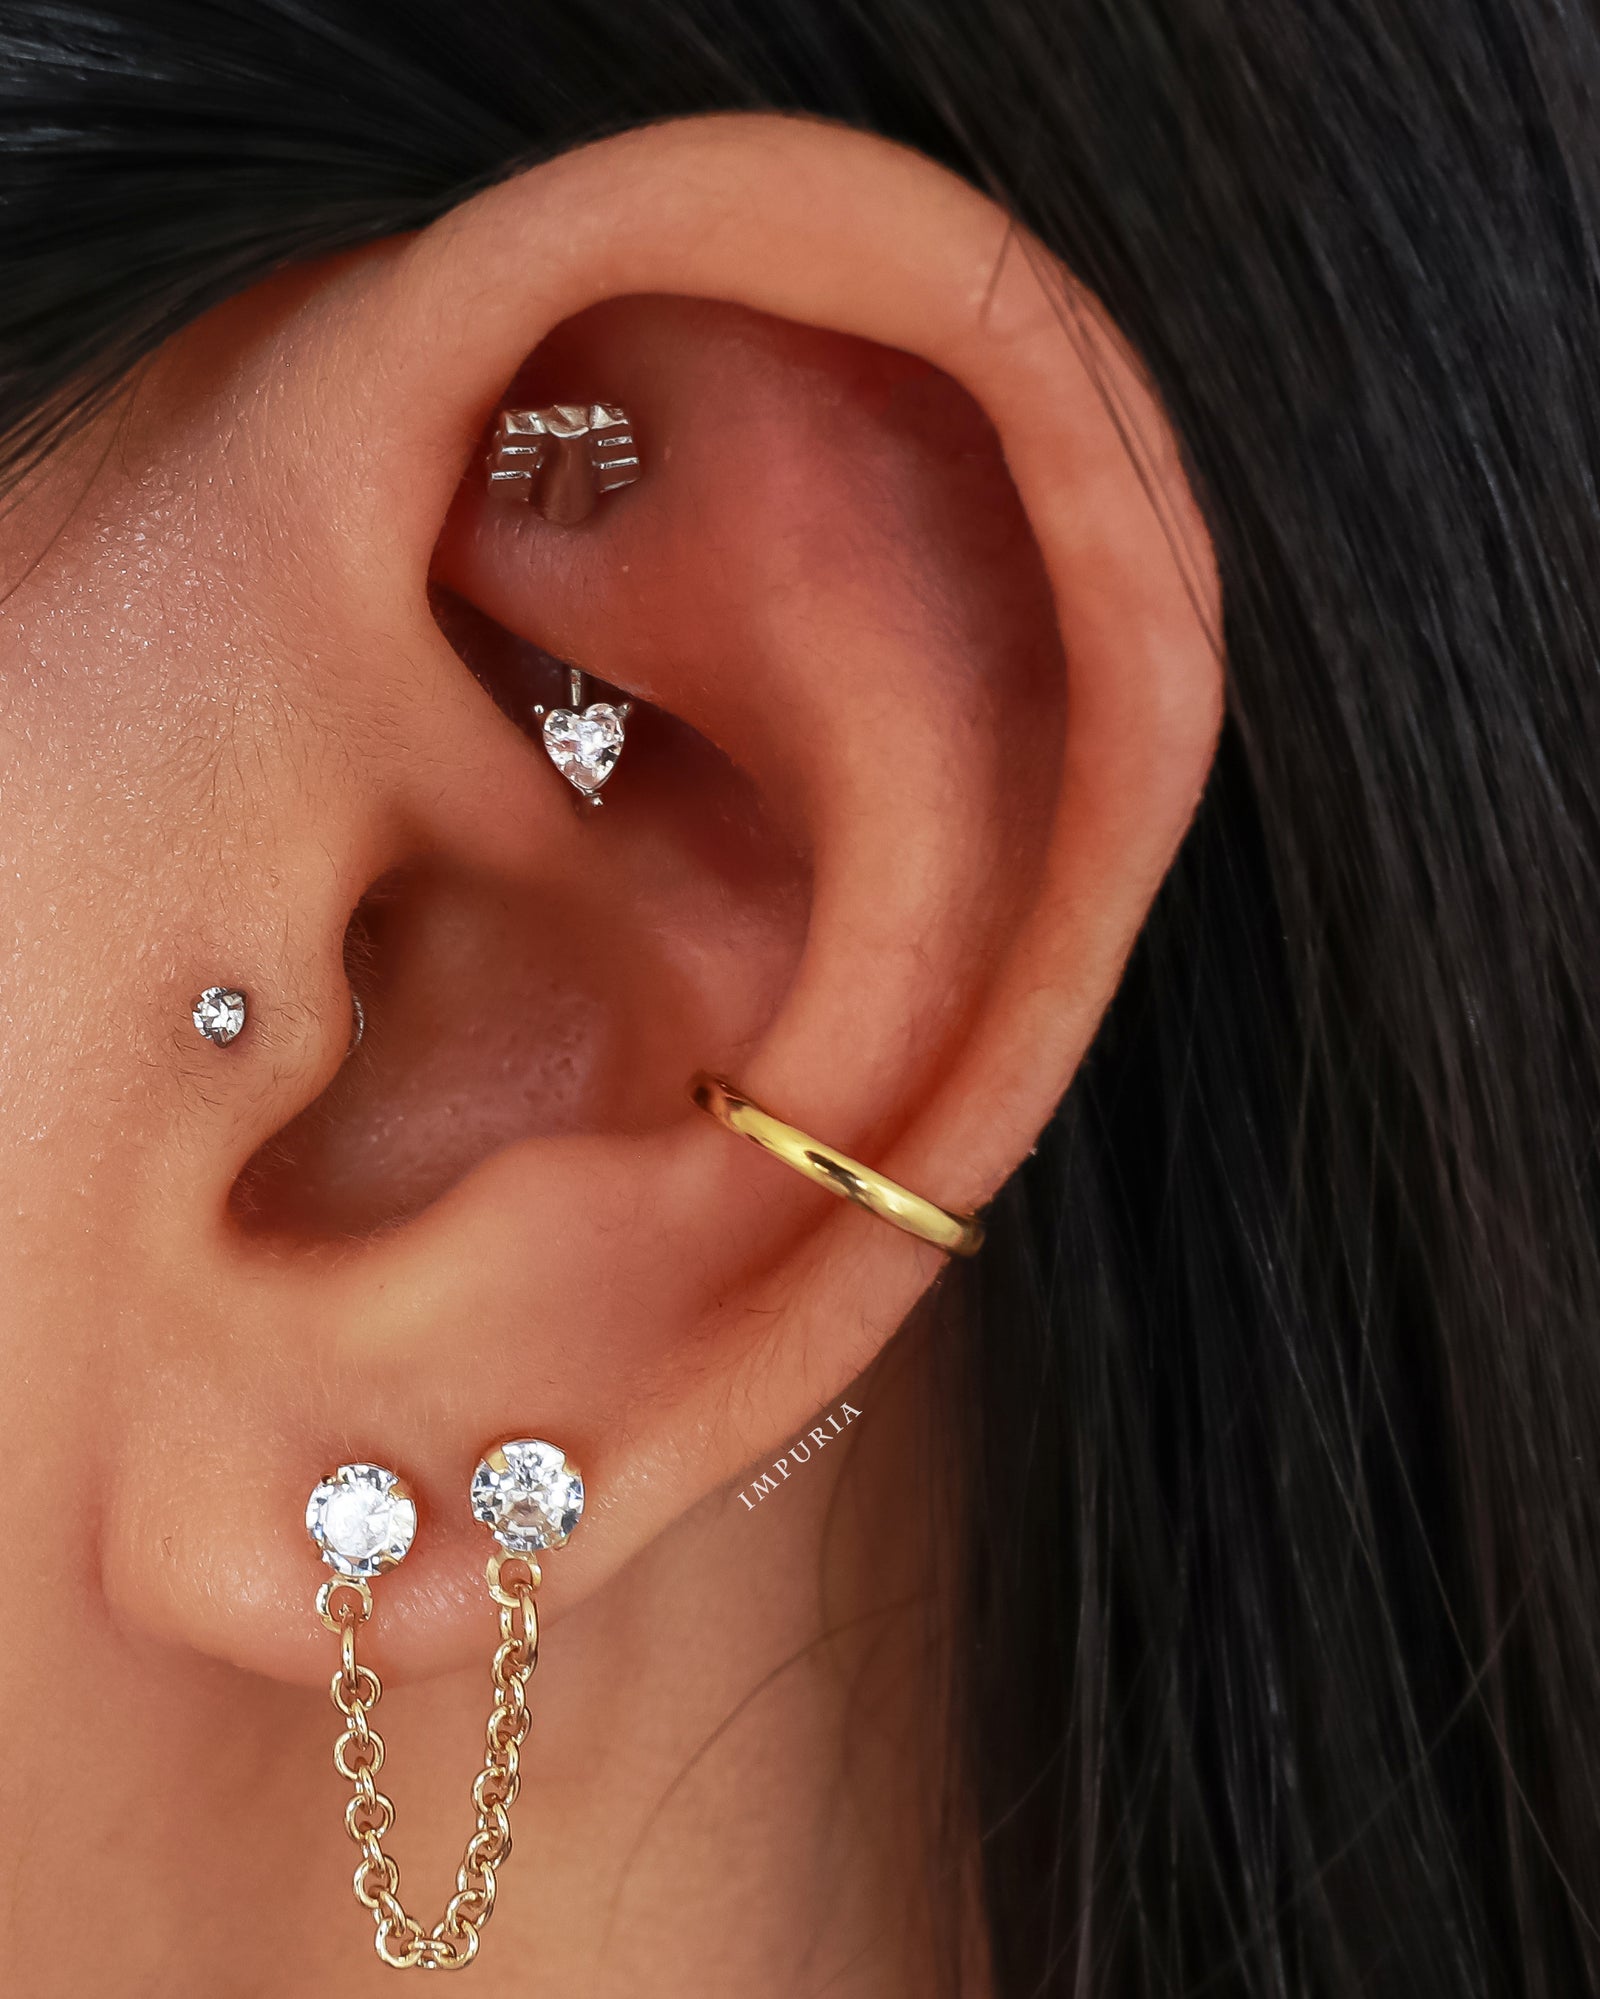 Heart Arrow Crystal Rook Earring Curved Barbell Ear Piercing Jewelry ...